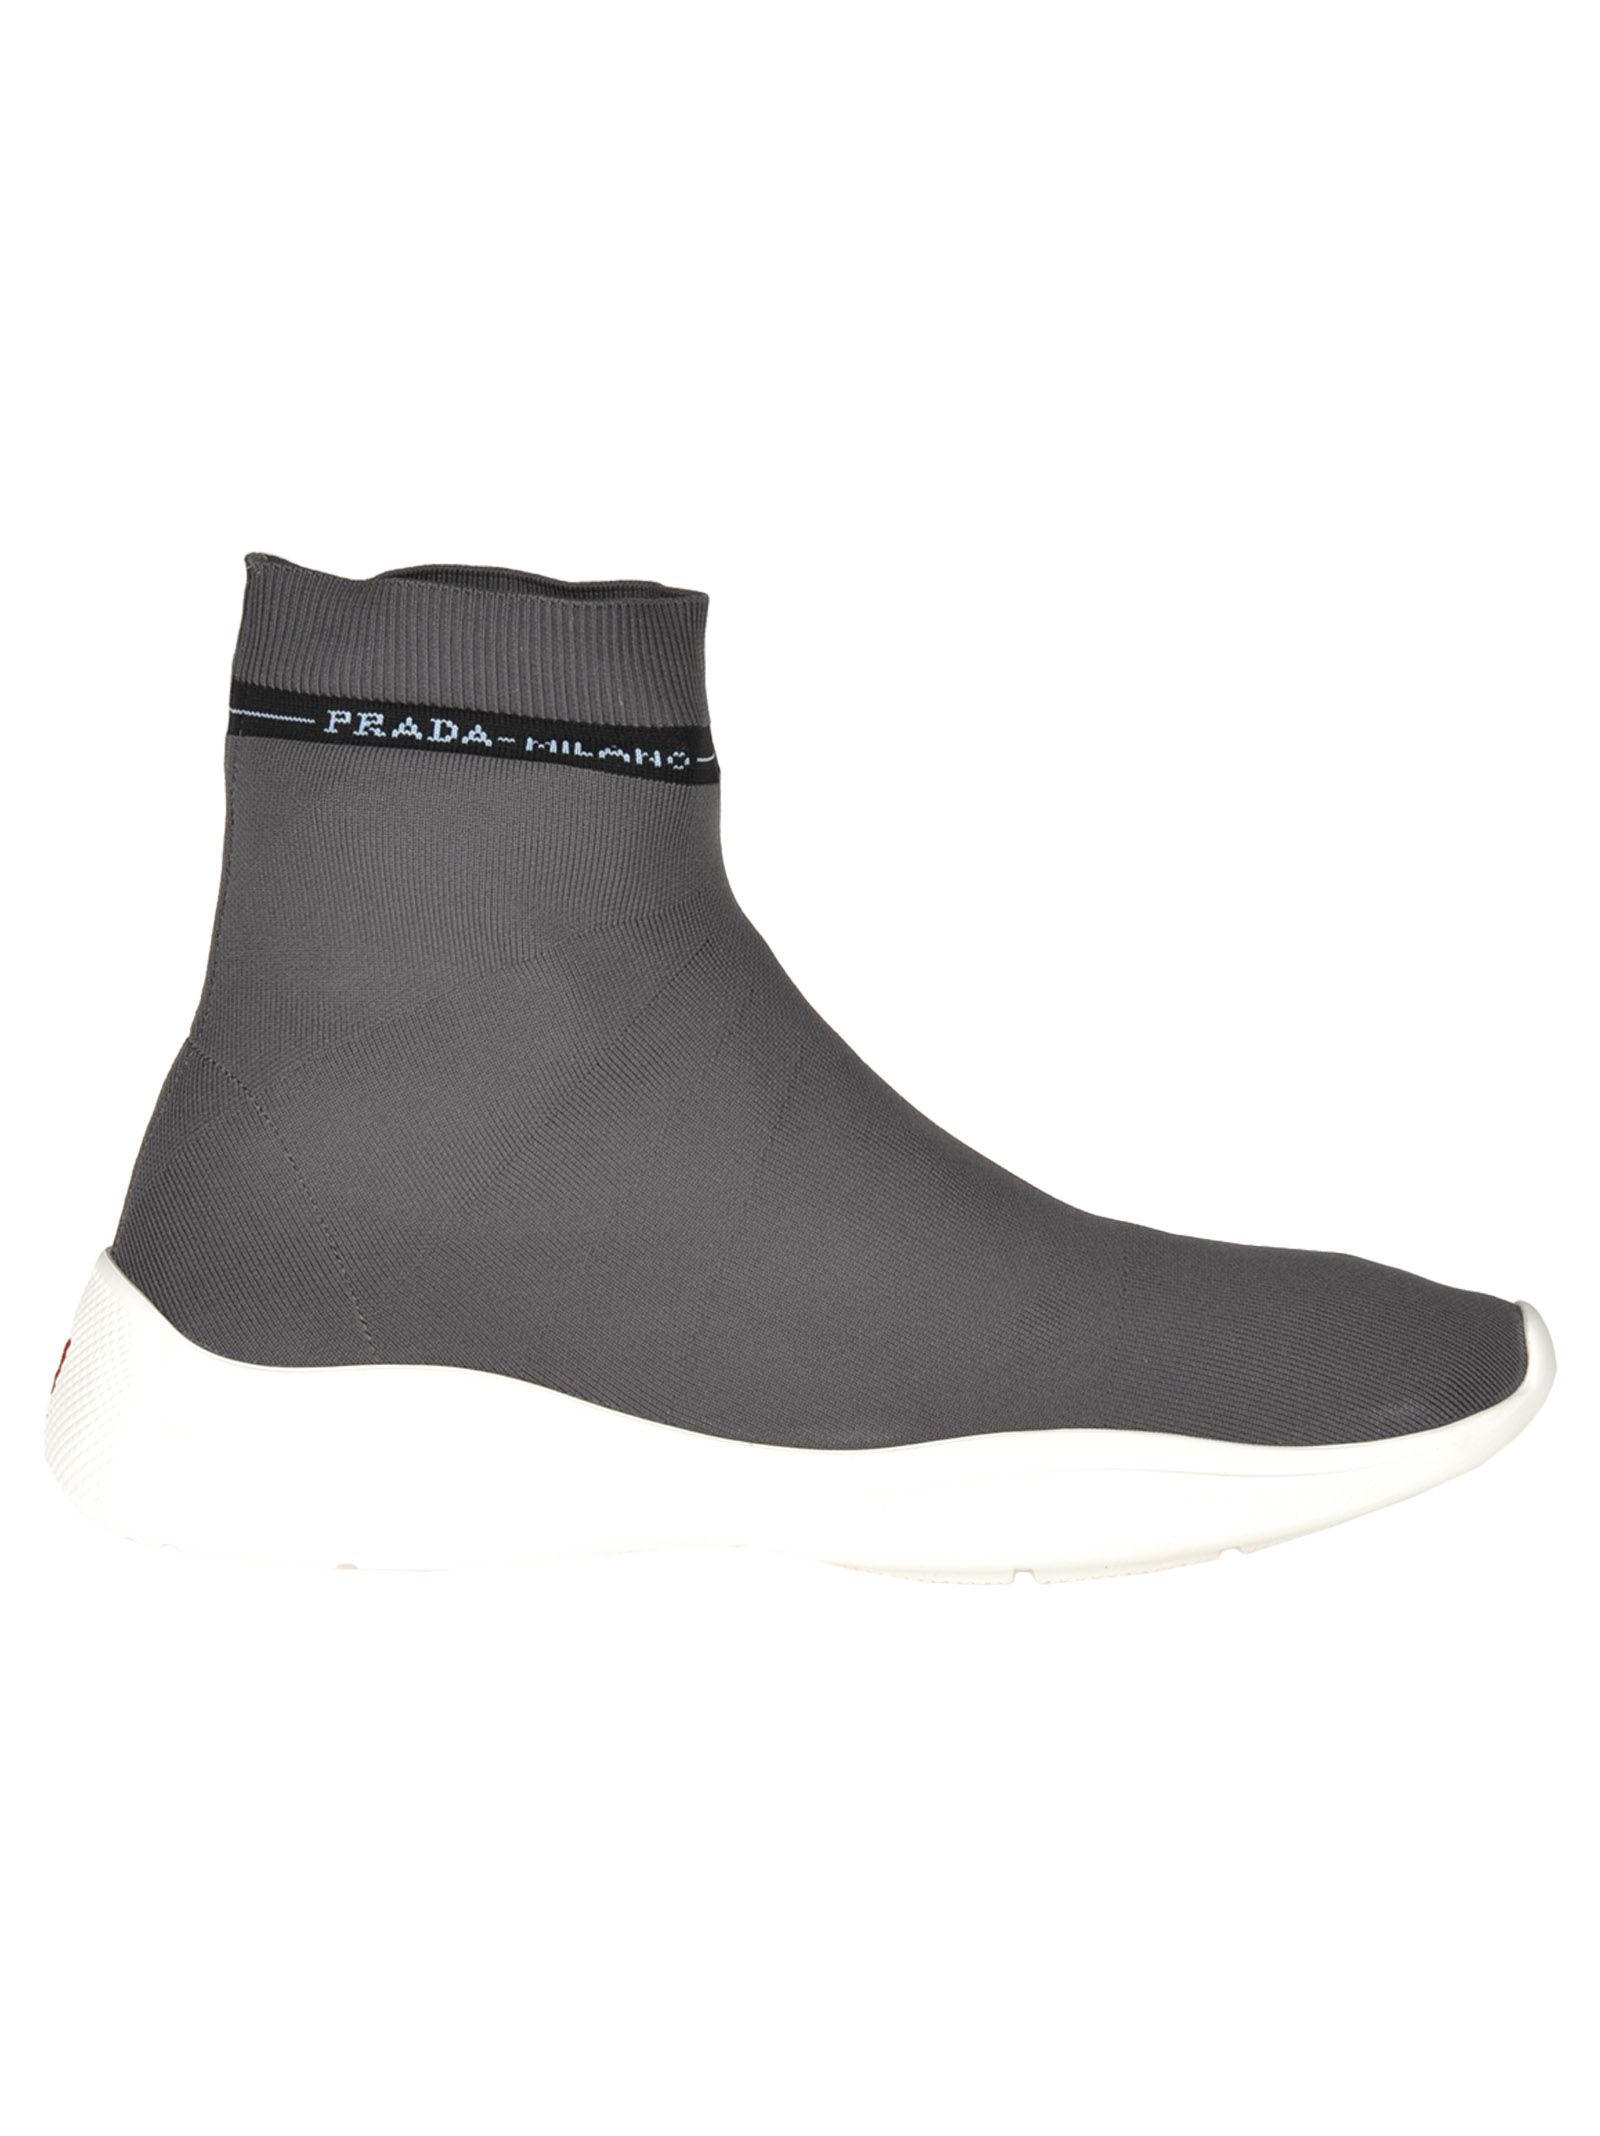 italist | Best price in the market for Prada Prada High Sneaker Sock ...